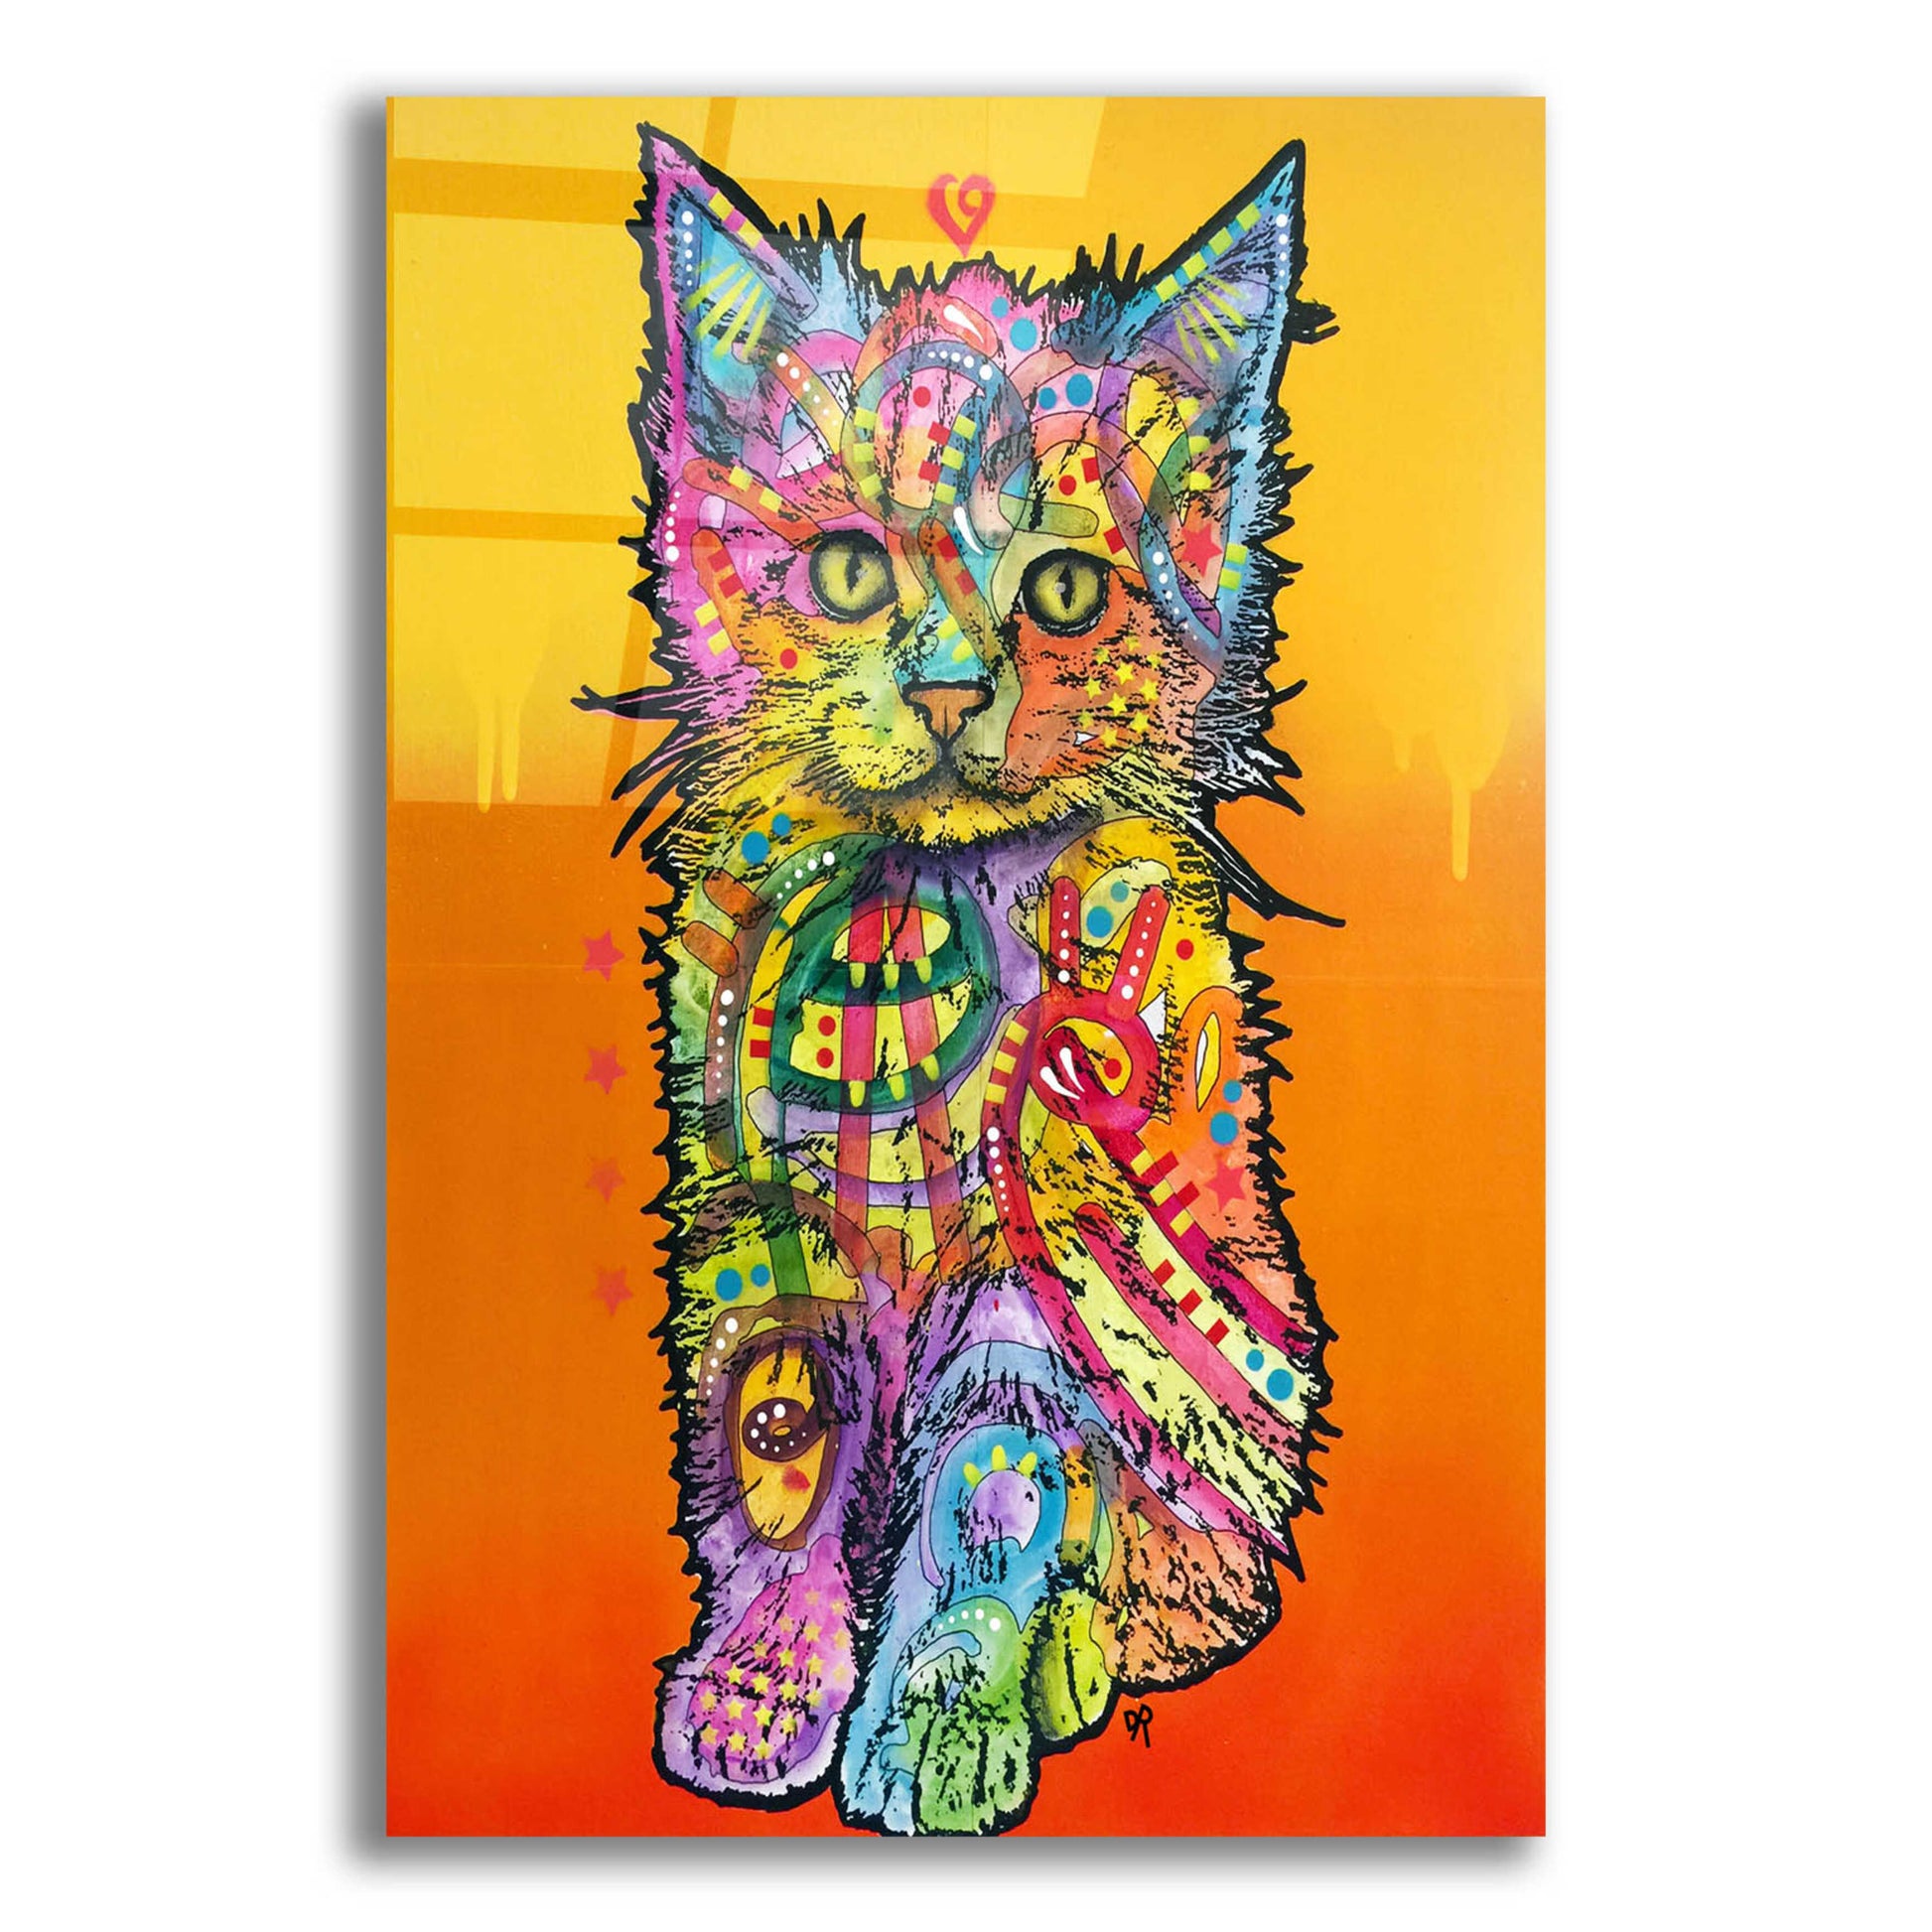 Epic Art 'Love Kitten' by Dean Russo, Acrylic Glass Wall Art,12x16